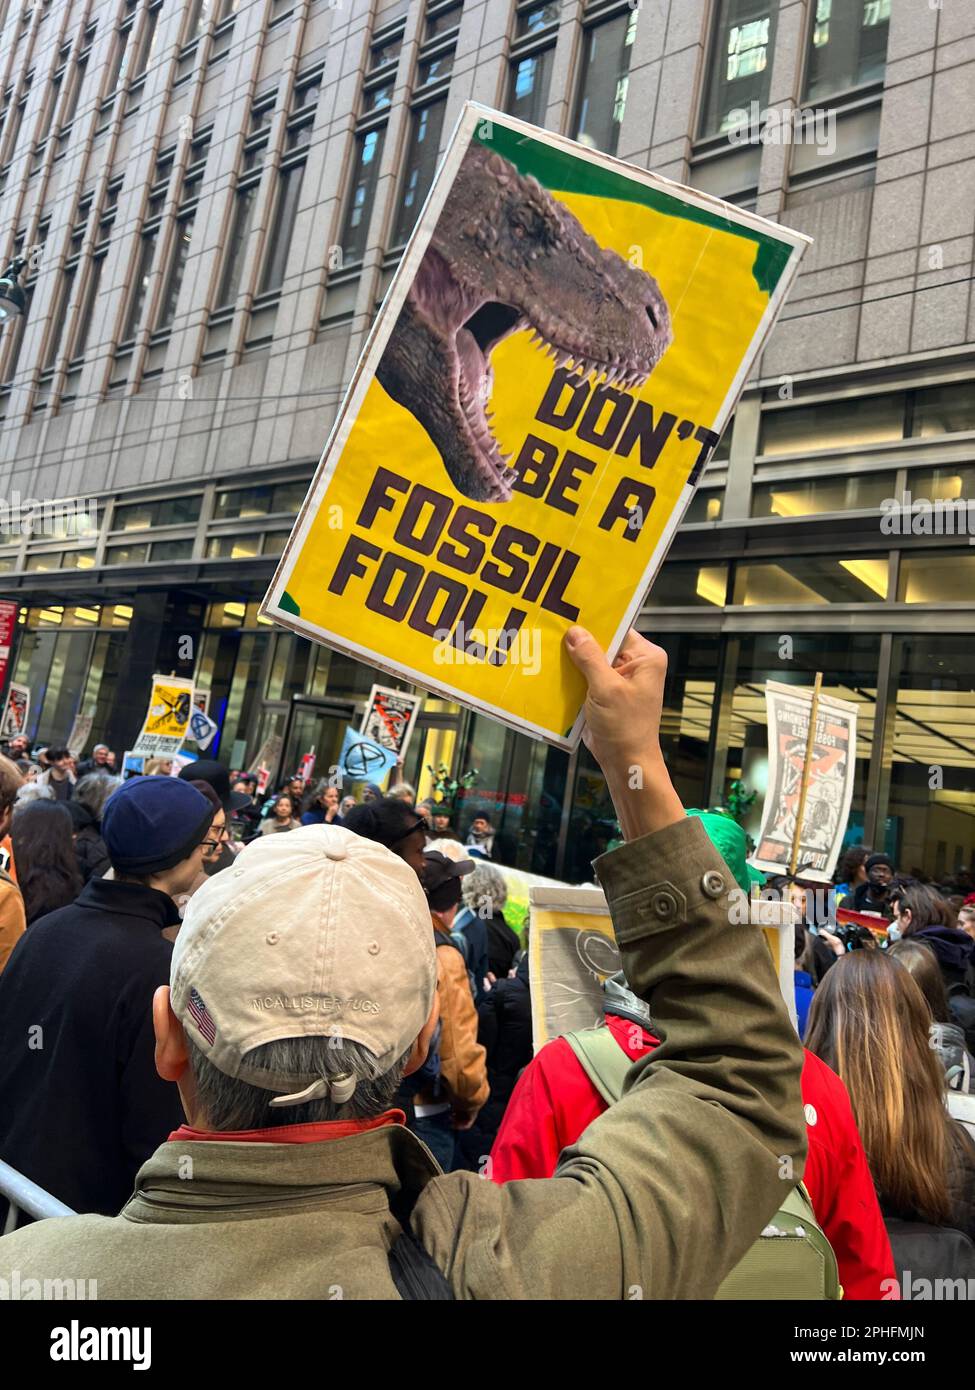 Les militants écologistes manifestent et manifestent contre la poursuite des investissements des grandes banques dans des compagnies de combustibles fossiles qui détestent lentement la planète de plusieurs façons. Banque D'Images